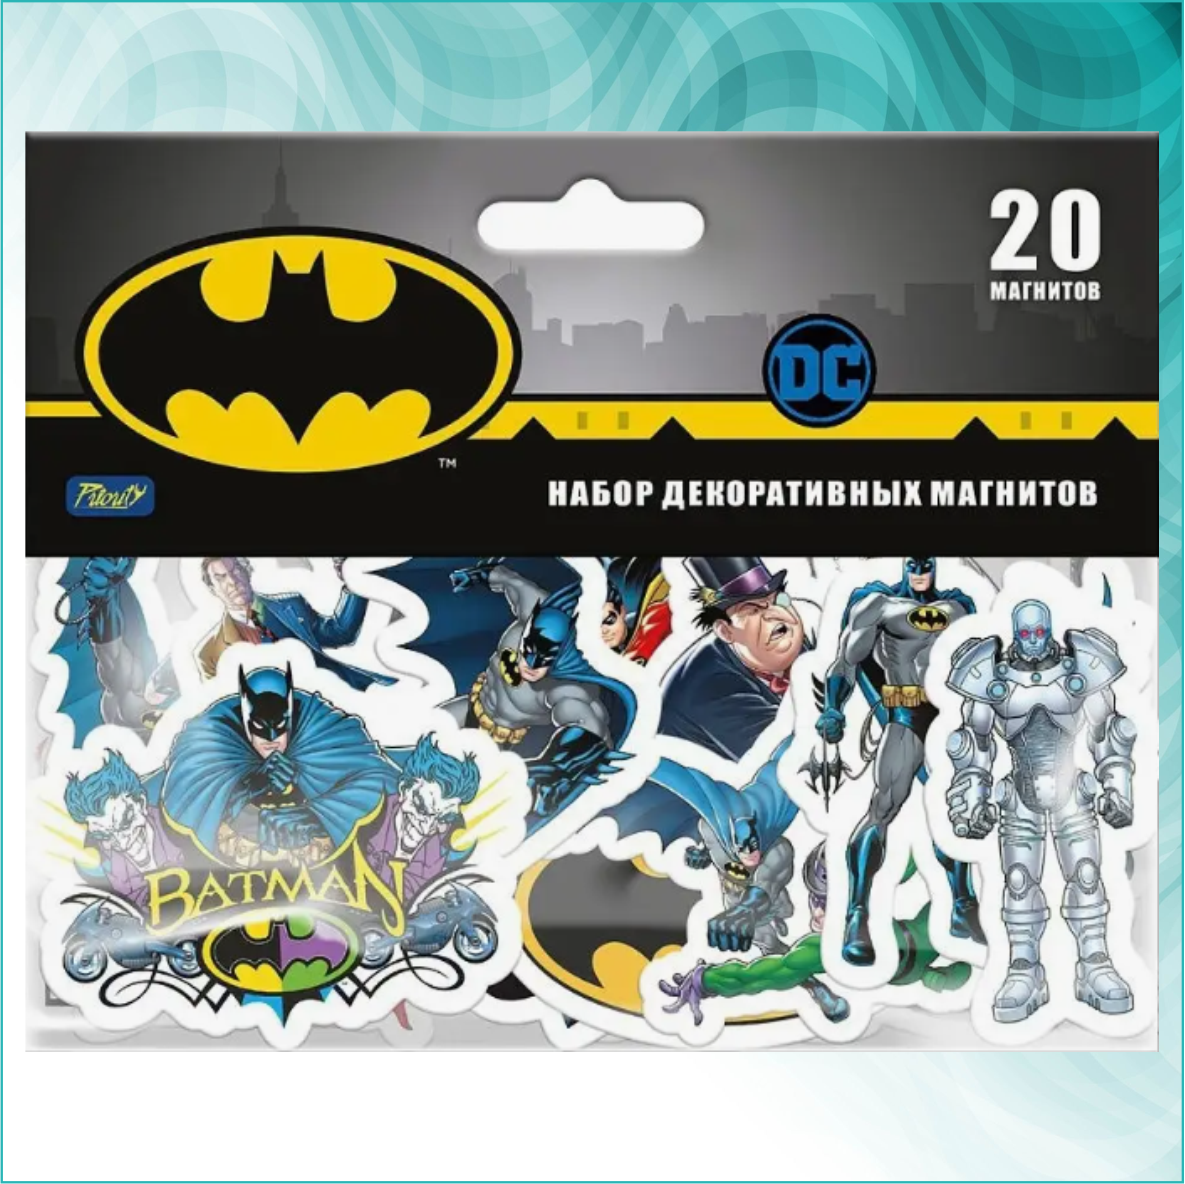 Набор декоративных магнитов "Бэтмен" (Batman DC) 20шт.